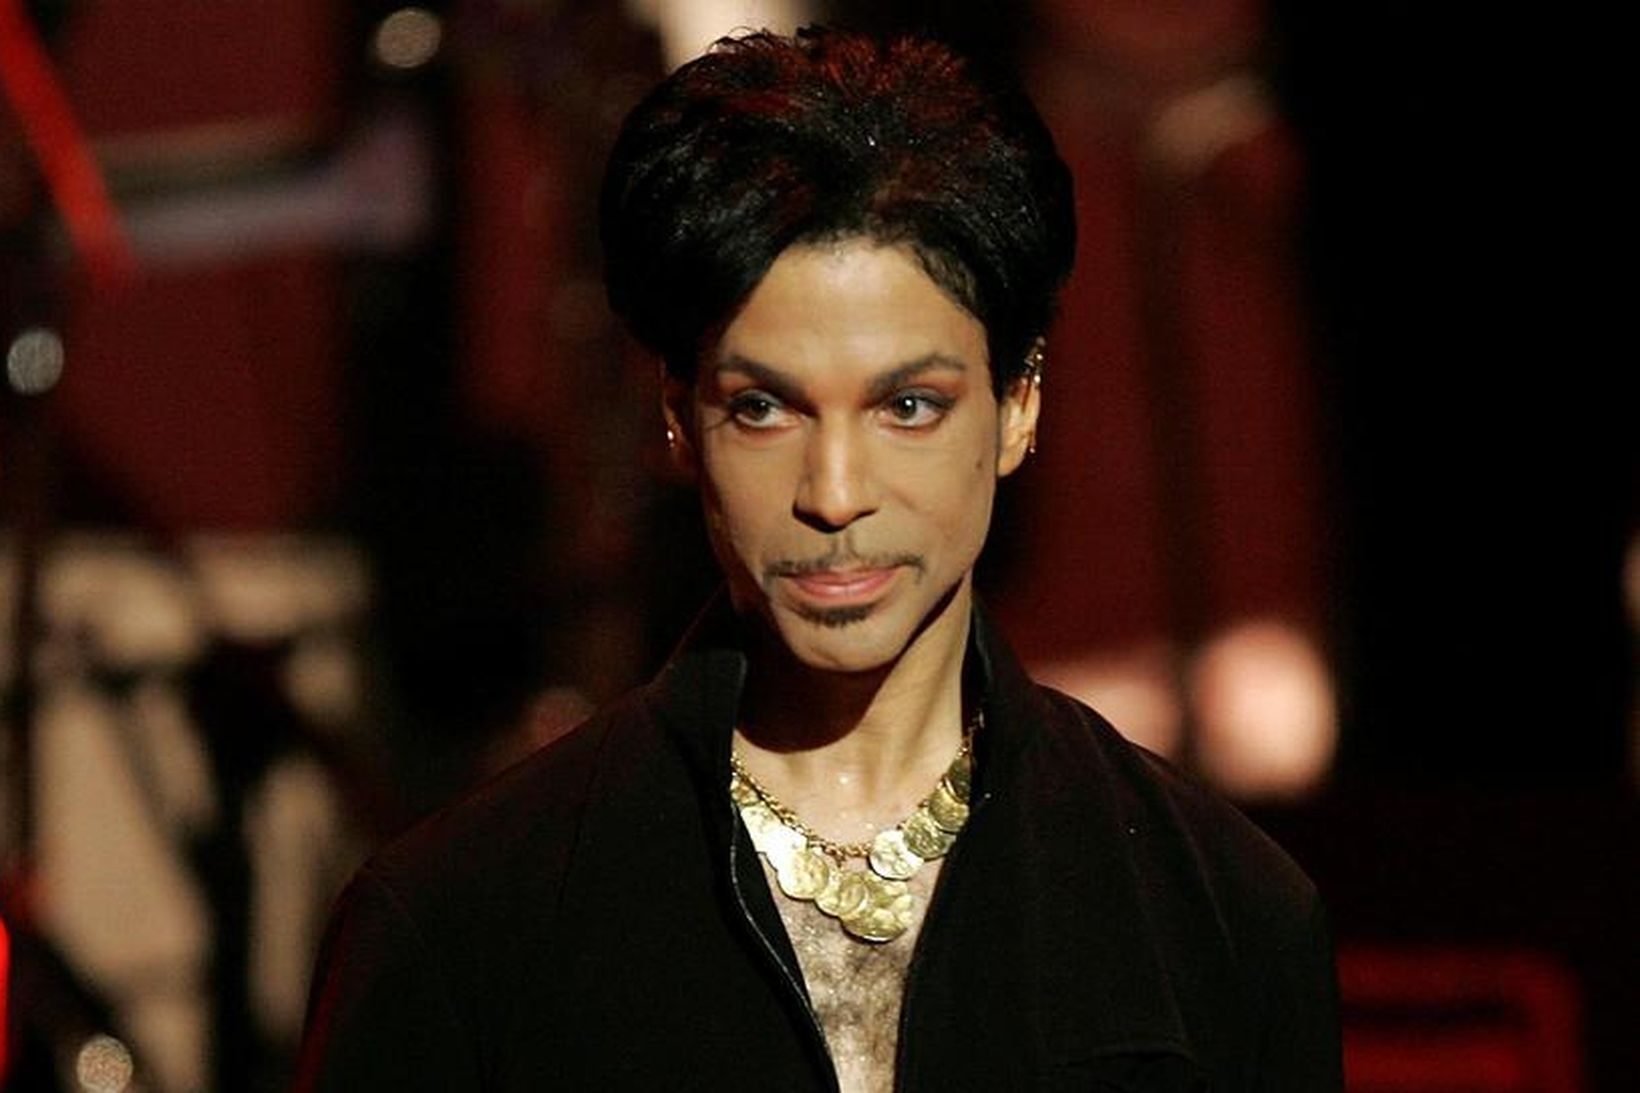 Prince fannst látinn á heimili sínu 21. apríl 2016.